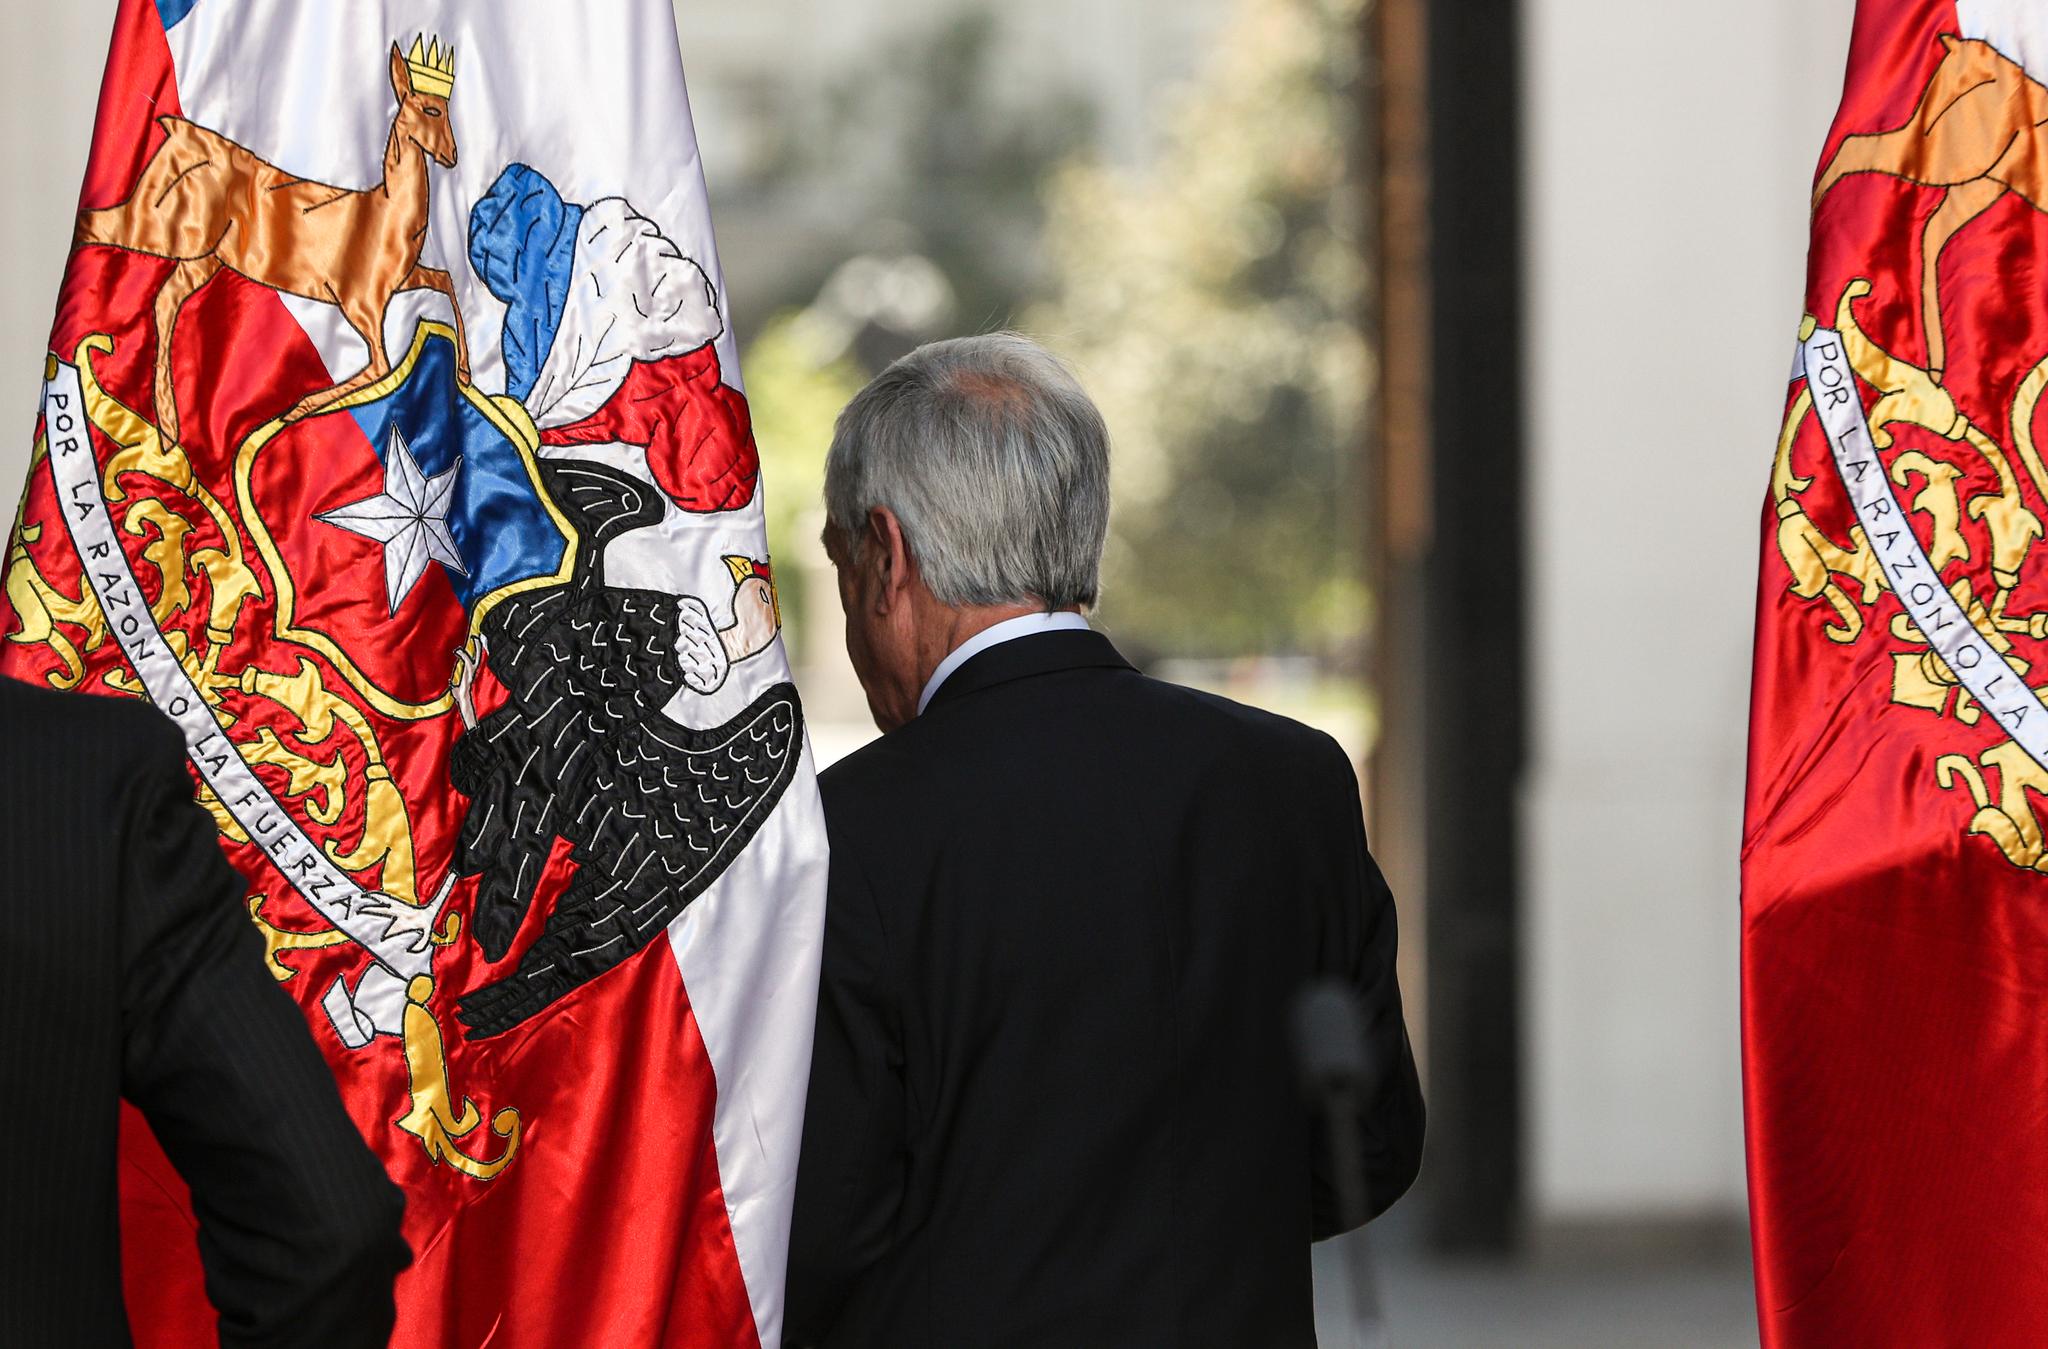 Chiles høyreorienterte president Sebastián Piñera har gått med på at landet skal få en ny grunnlov. Etter at han ble valgt i 2018, stanset han et forslag til grunnlovsendringer som hans venstreorienterte forgjenger Michelle Bachelet hadde levert til nasjonalforsamlingen. 